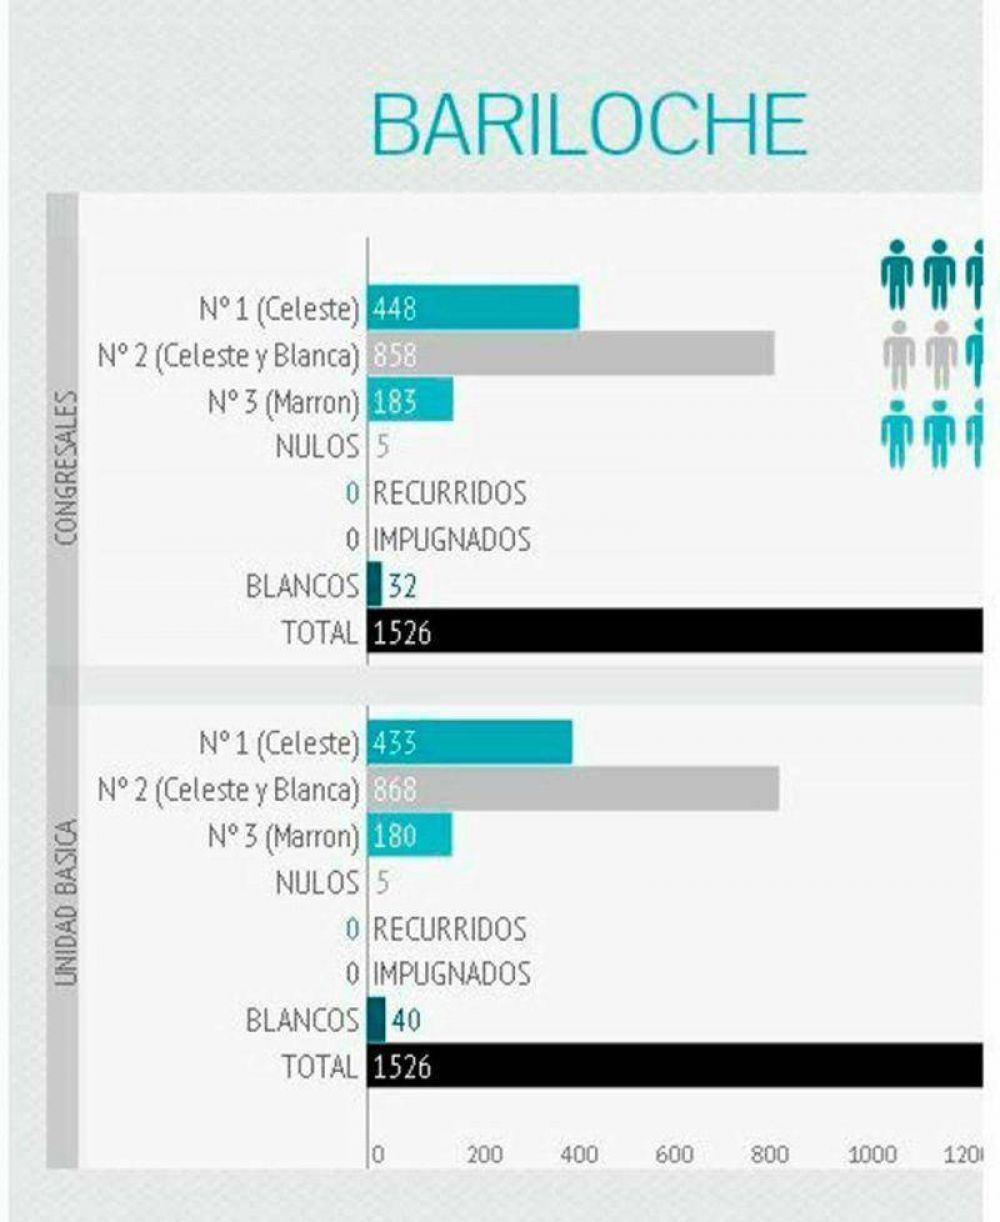 En Bariloche se registraron 1526 votos peronistas y sufragó tan sólo un 28% del padrón